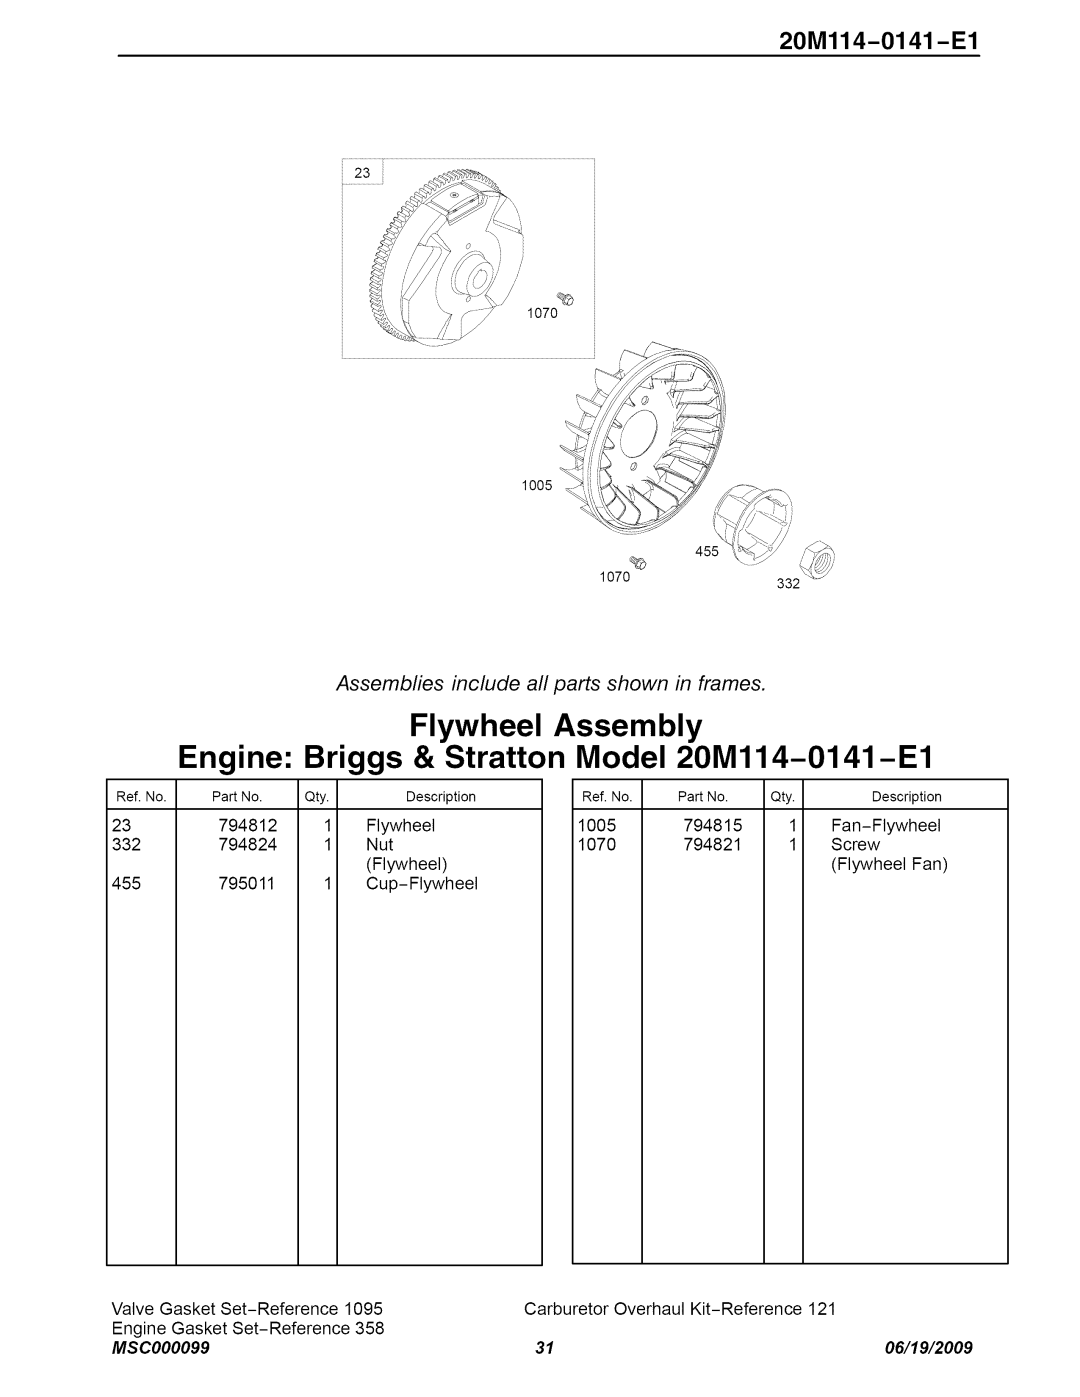 Craftsman C950-52943-0 Flywheel Assembly, Engine: Briggs & Stratton Model 20M114-0141-E1, 20Ml14-0141 -El, MSC000099 